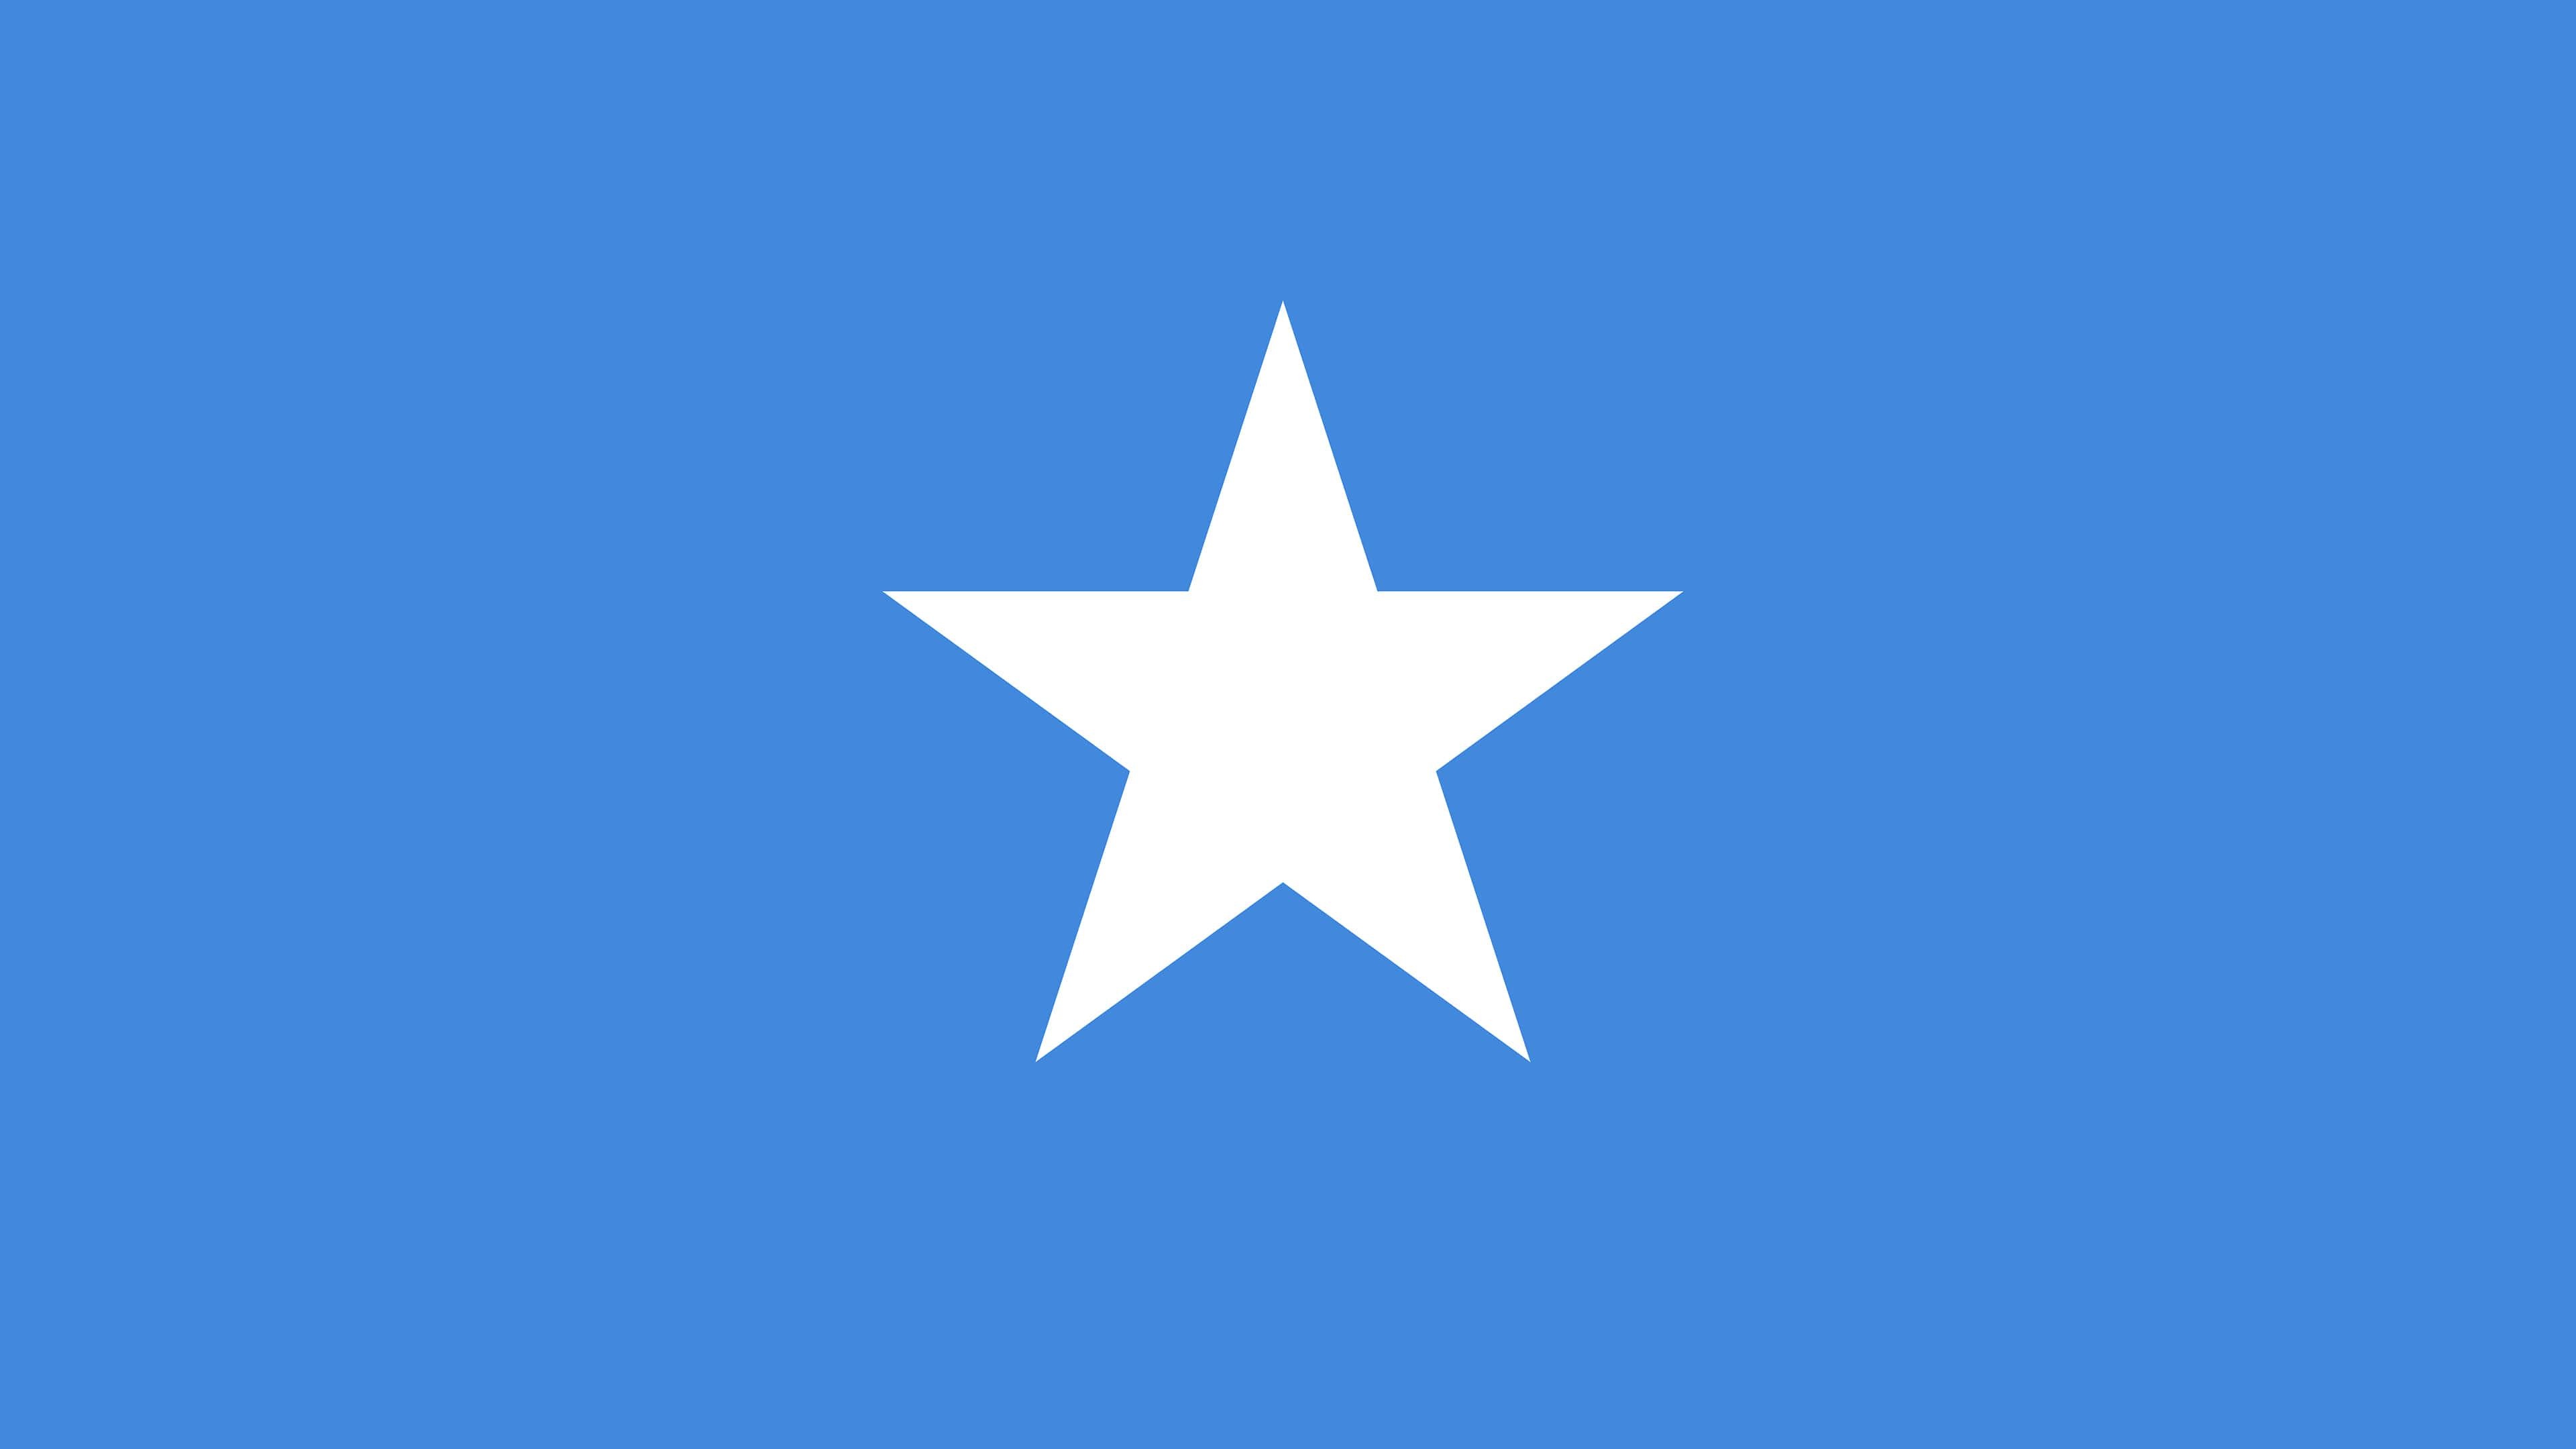 Somalia, Somali flag, Patriotic wallpaper, National pride, 3840x2160 4K Desktop